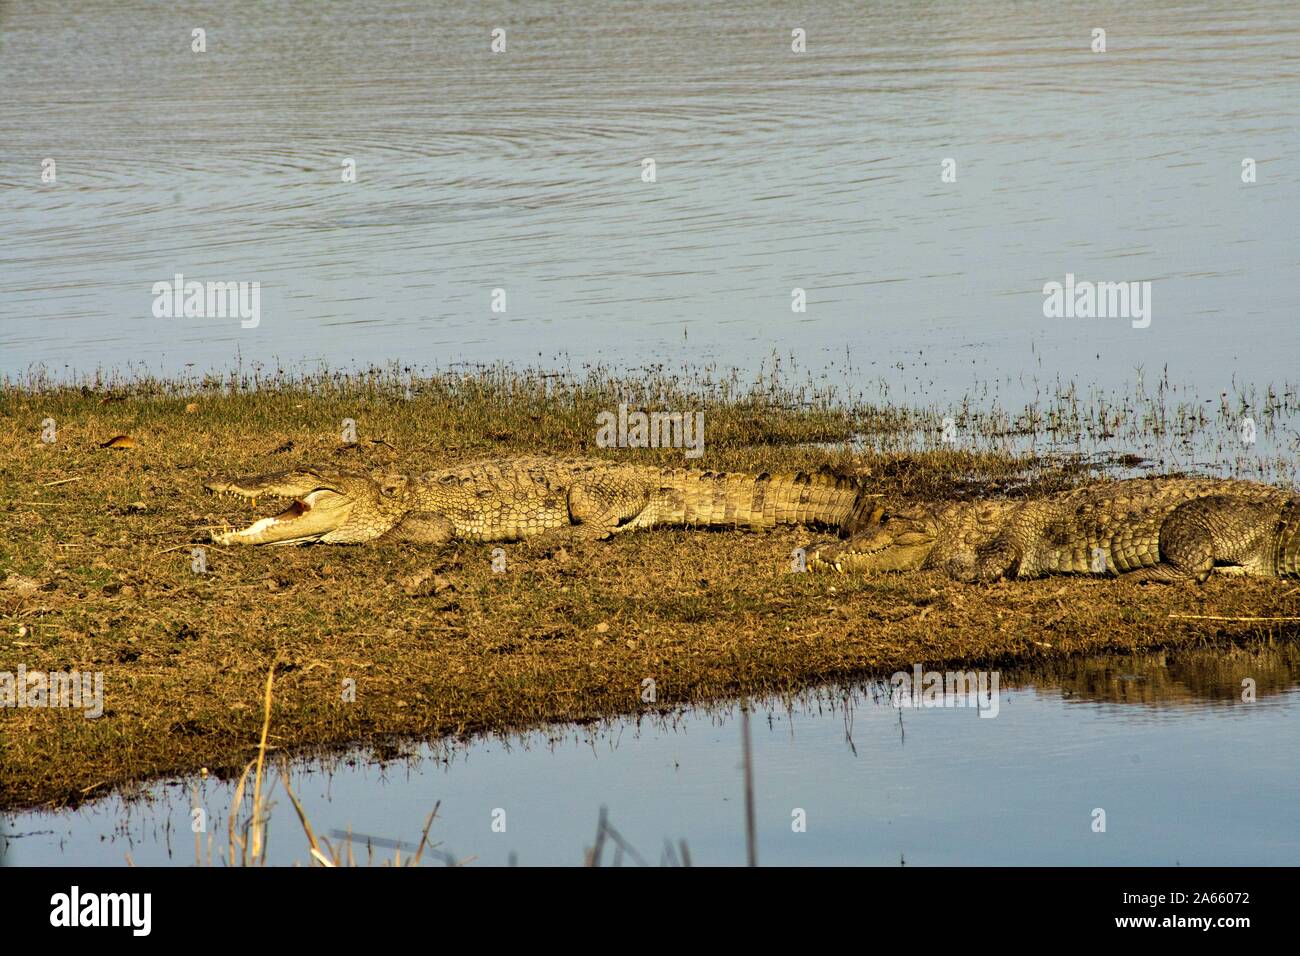 Pèlerin de crocodile, Sanctuaire de faune de Ranthambore, Rajasthan, Inde, Asie Banque D'Images